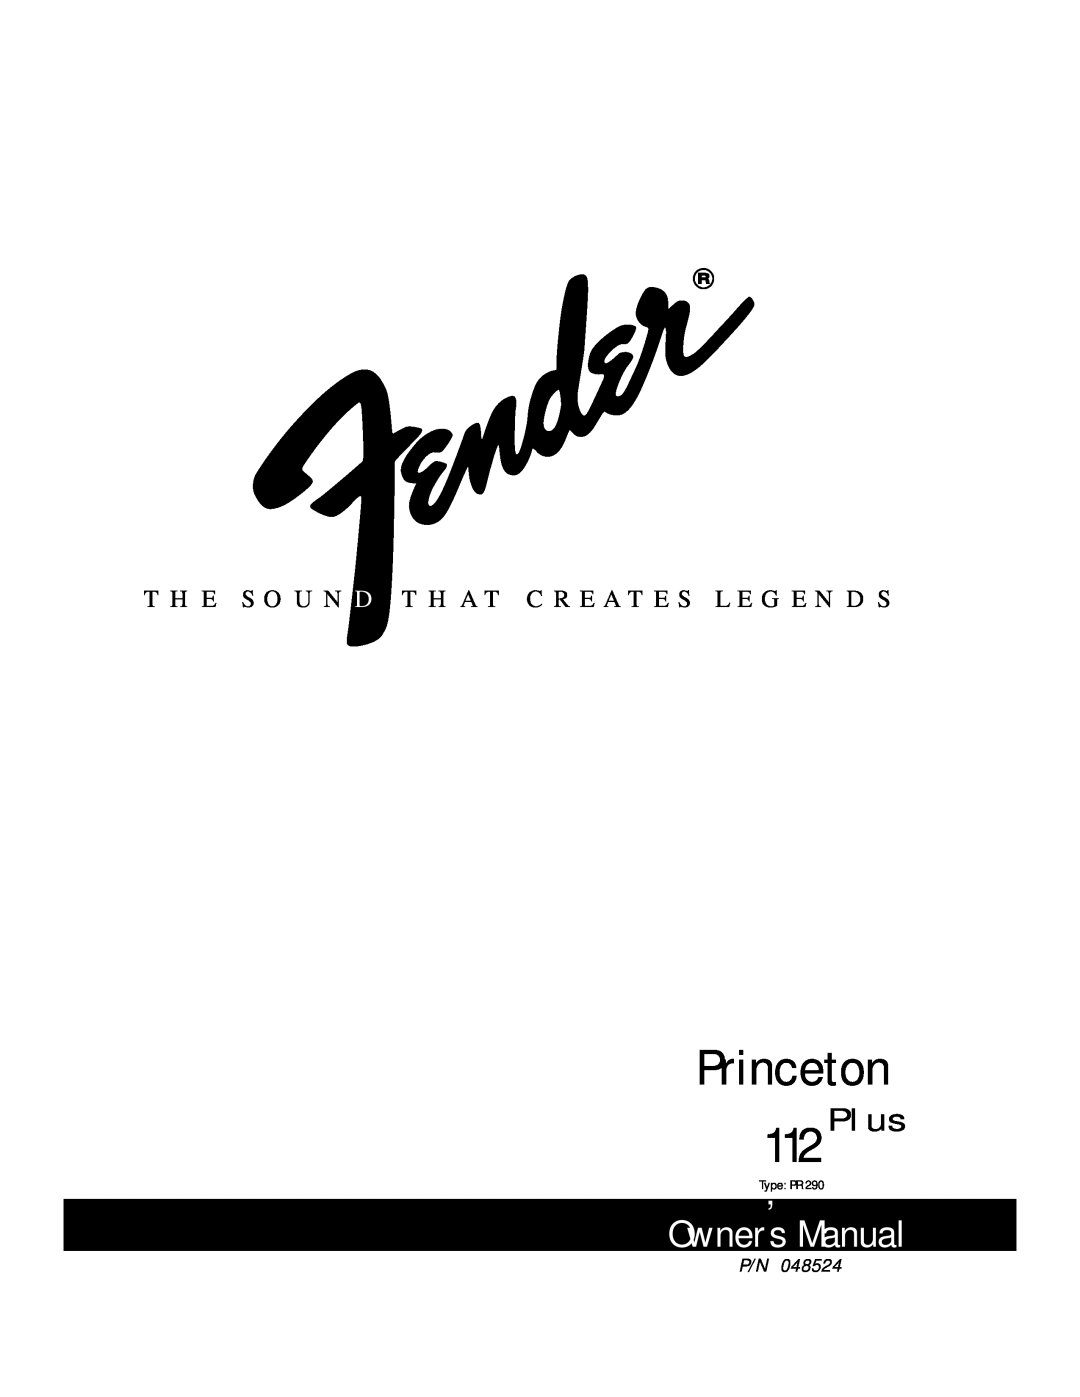 Fender PR 290 owner manual Princeton, Owner s Manual, 112Plus, T H E S O U N D T H A T C R E A T E S L E G E N D S 